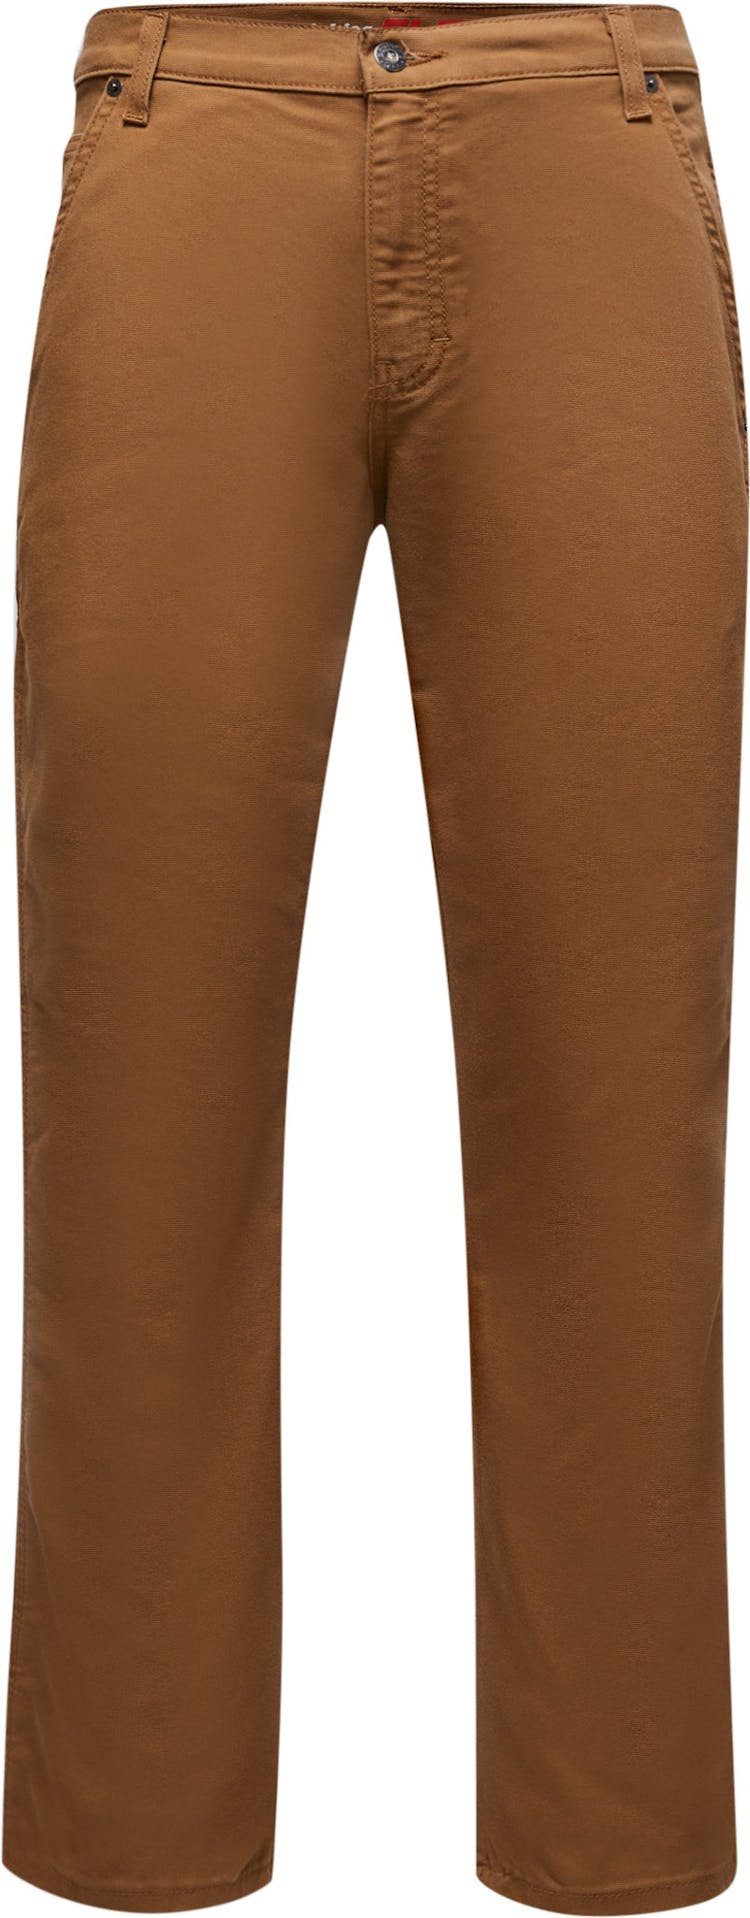 Numéro de l'image de la galerie de produits 1 pour le produit Pantalon menuisier FLEX, coupe standard, jambe droite, en coutil Tough Max - Homme